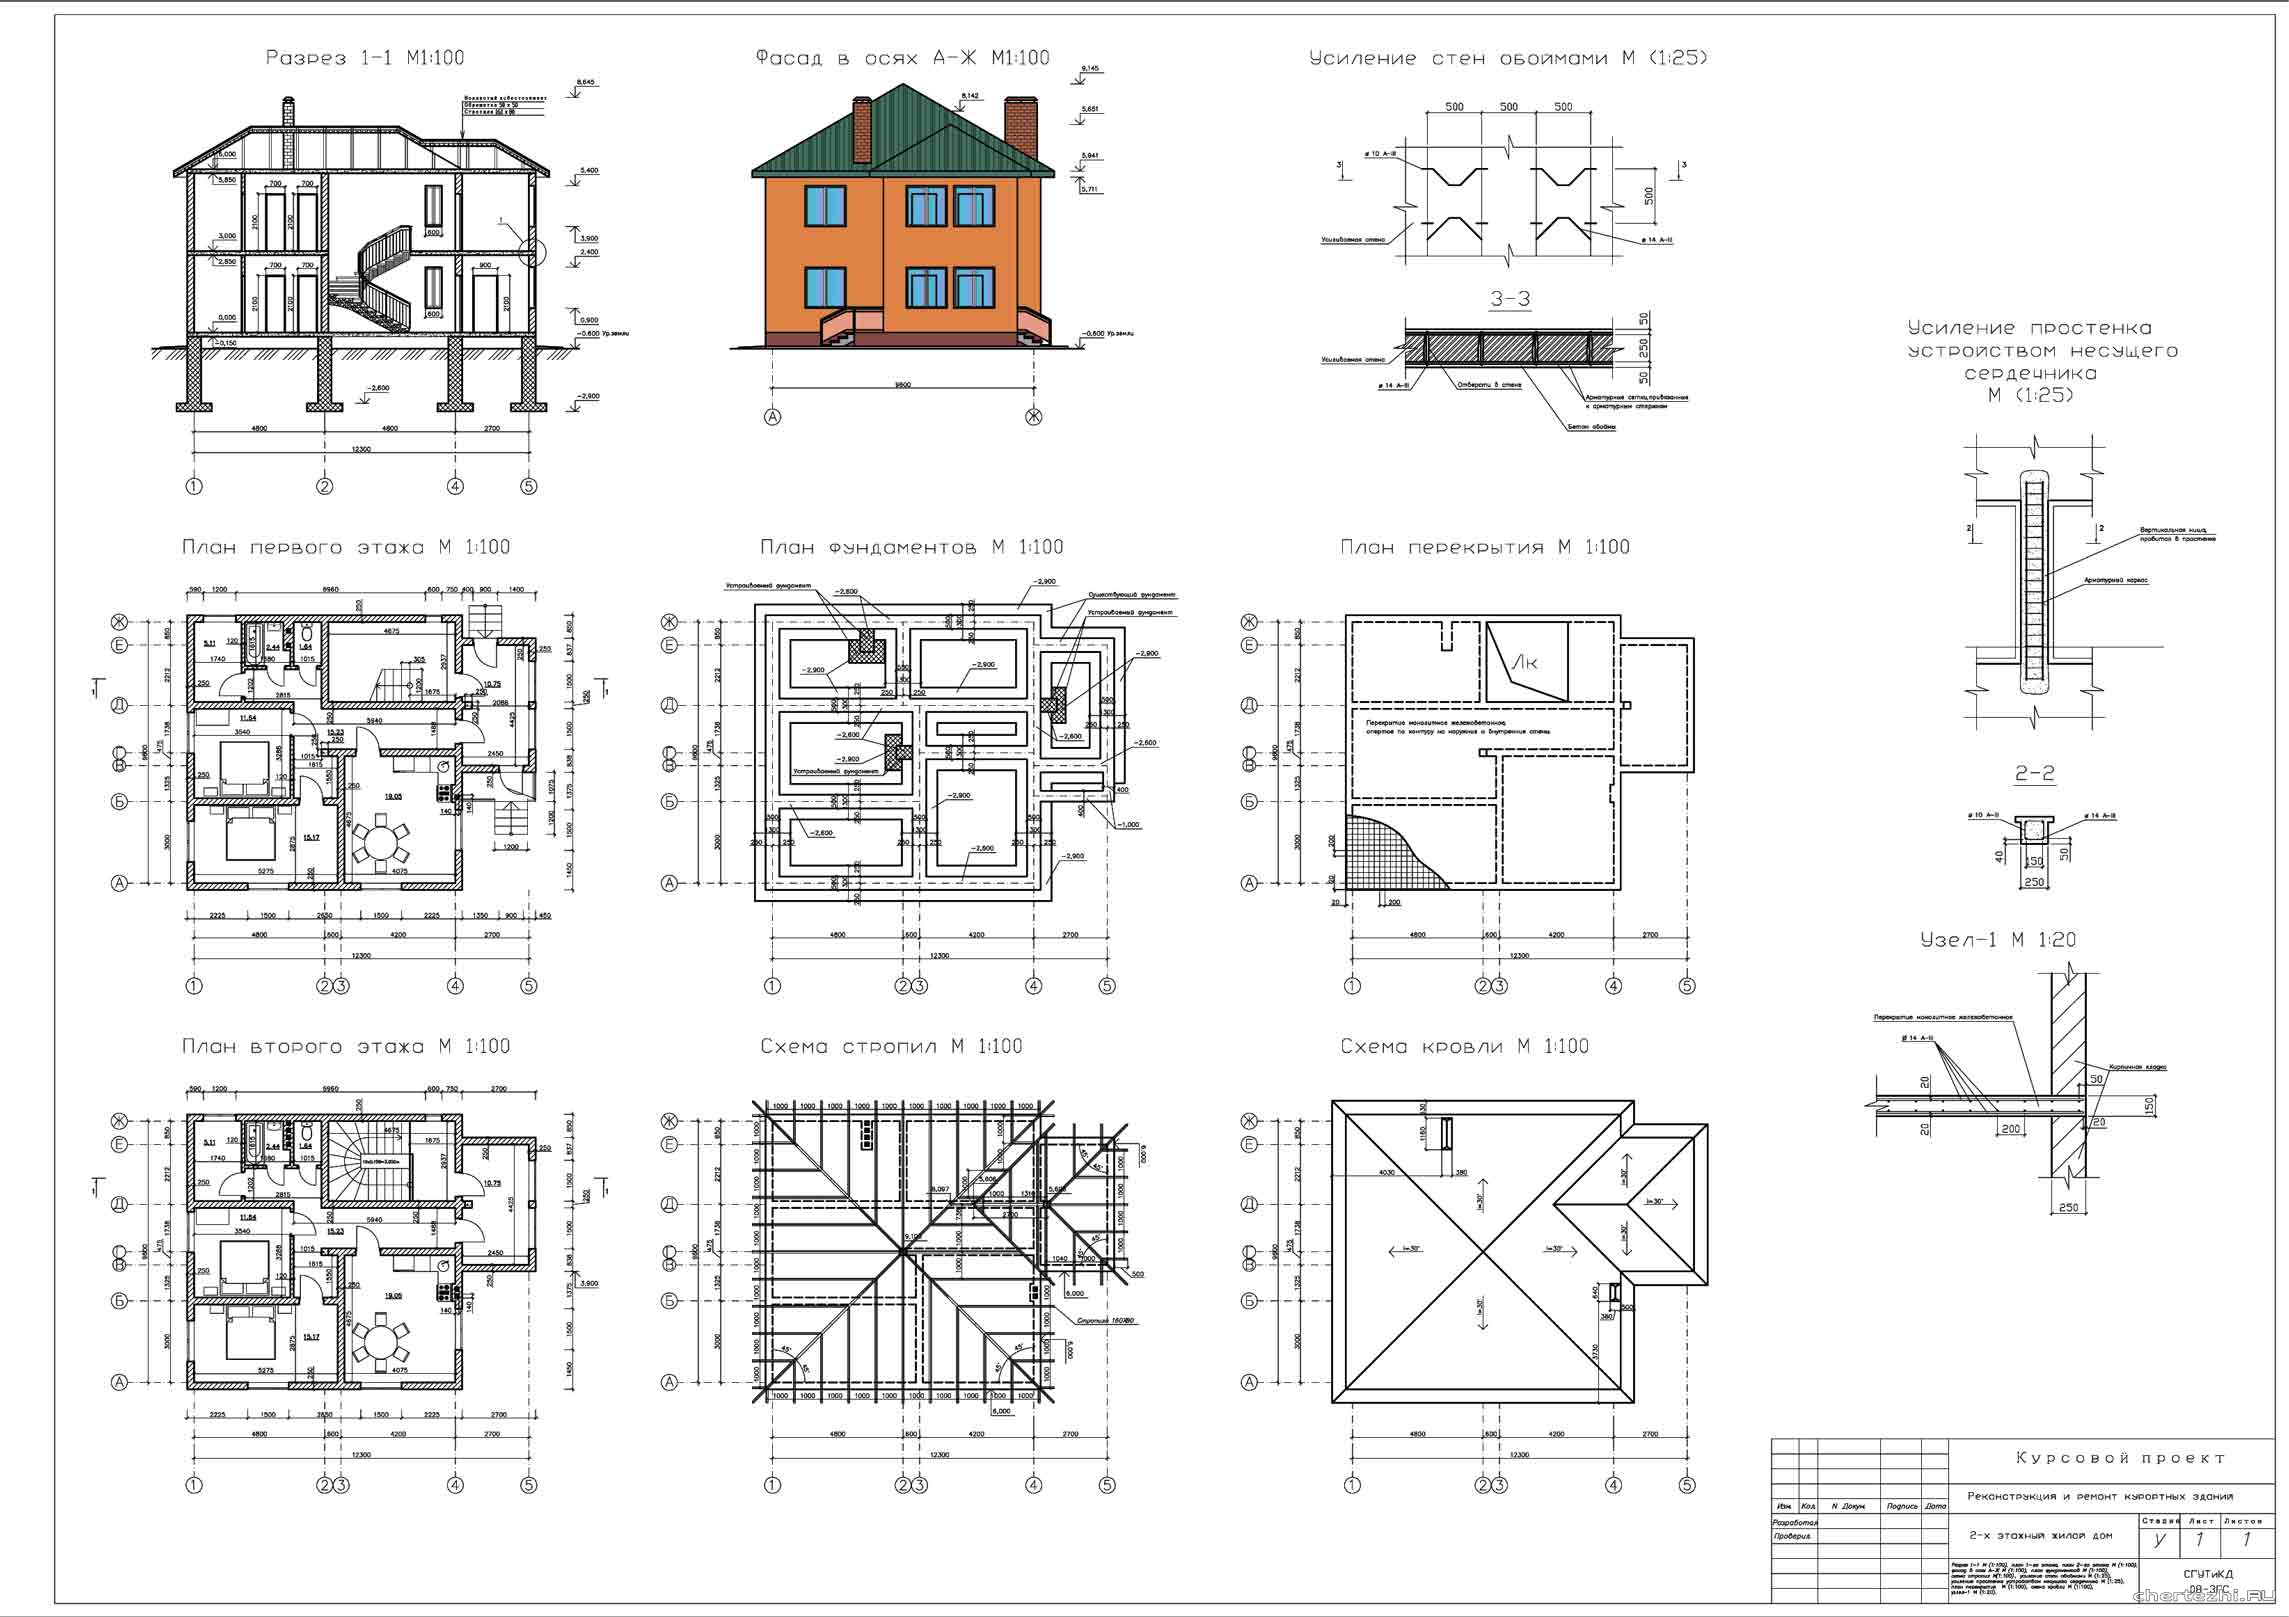 Курсовой проект - Реконструкция одноэтажного кирпичного жилого дома 12,3 х 9,6 м